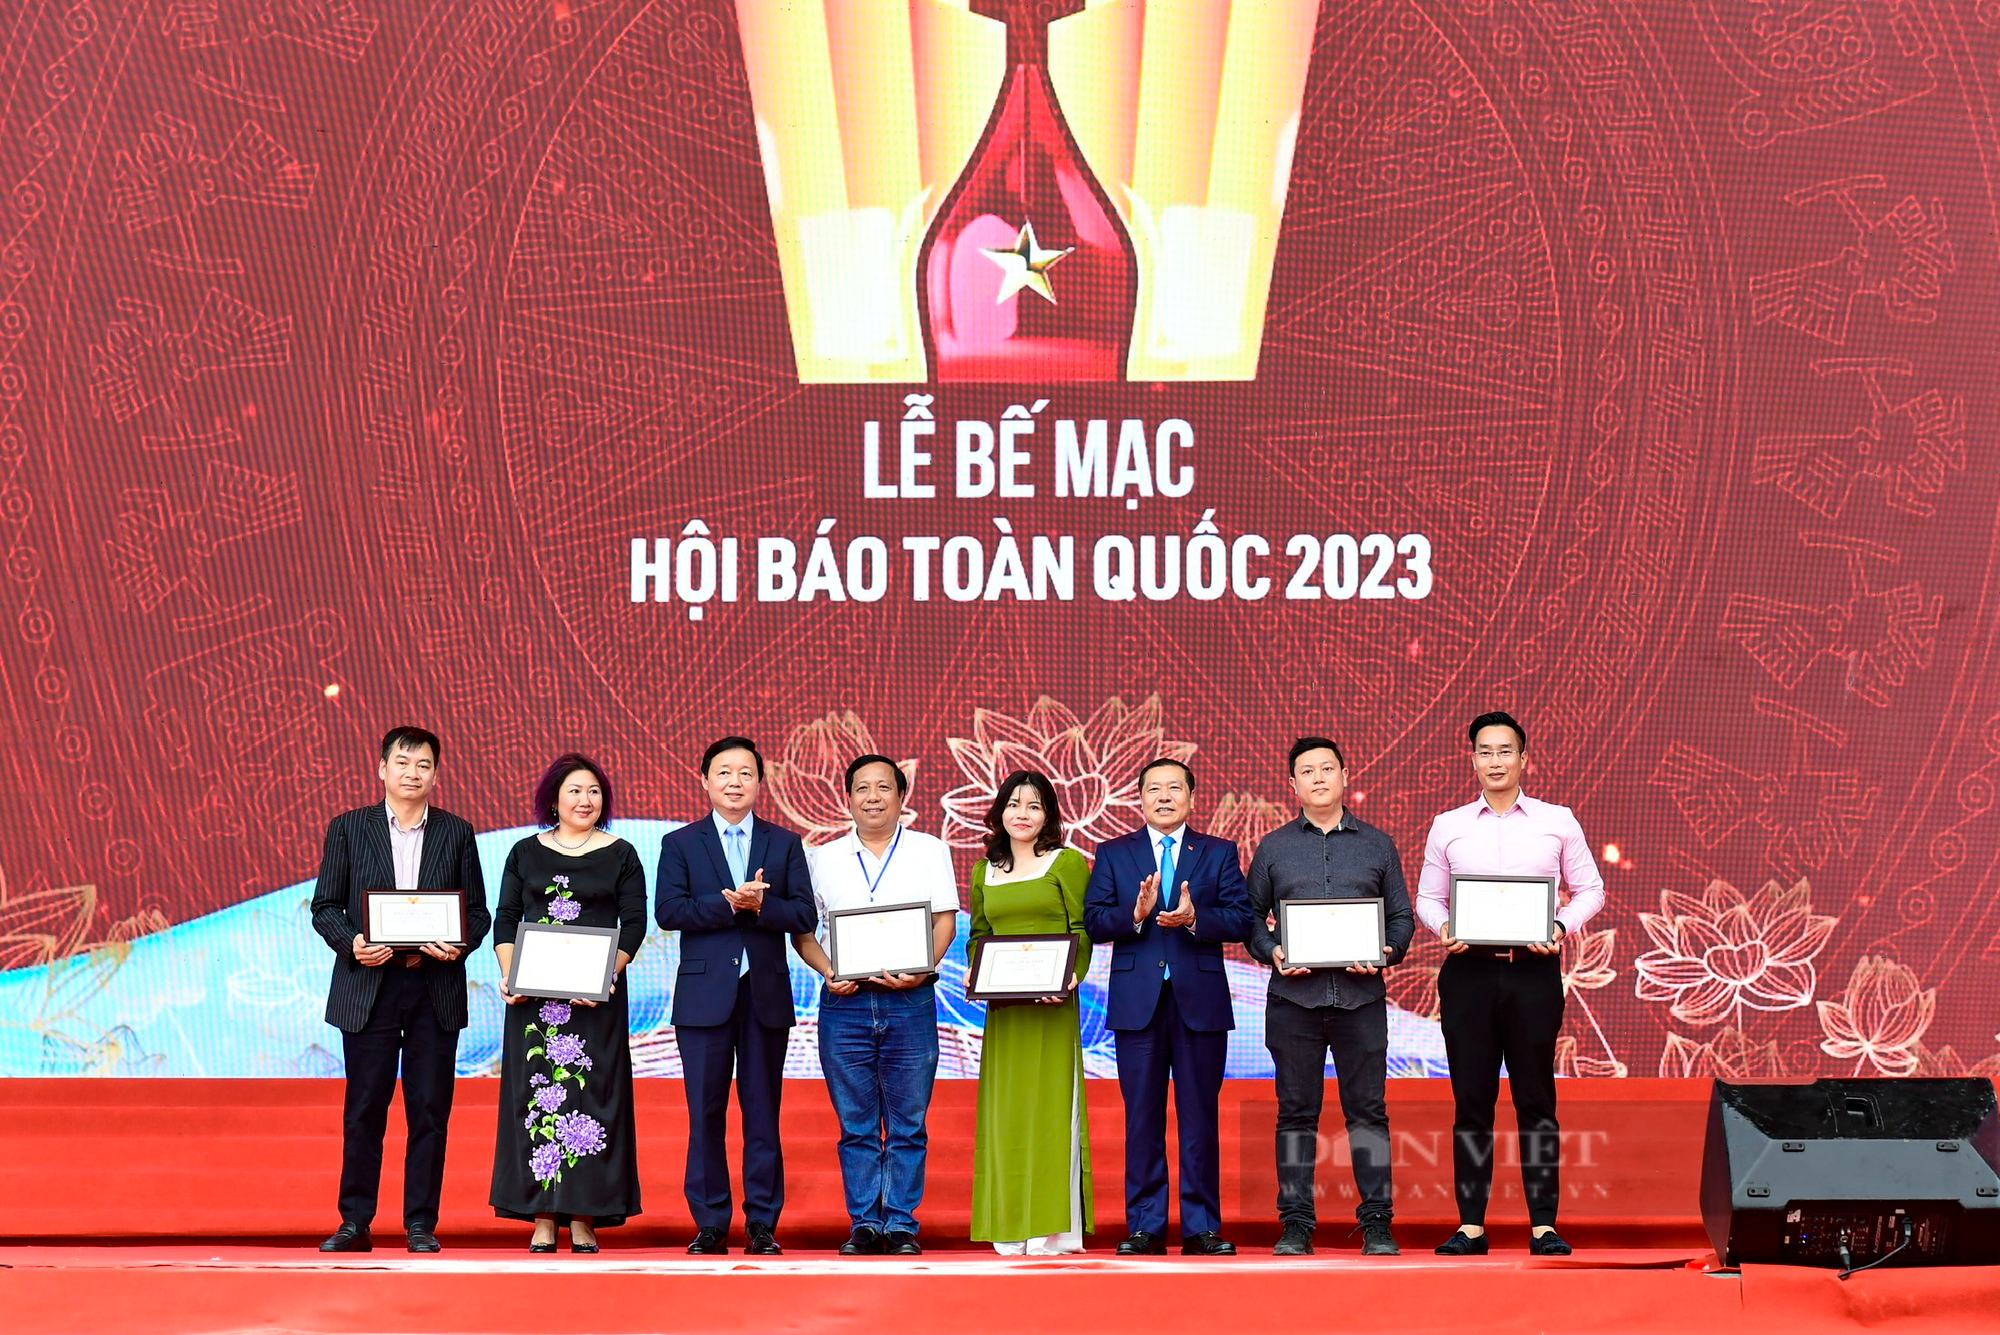 Bế mạc Hội báo toàn quốc 2023: Báo NTNN/Dân Việt đoạt giải Gian trưng bày và Bìa báo Tết ấn tượng - Ảnh 6.